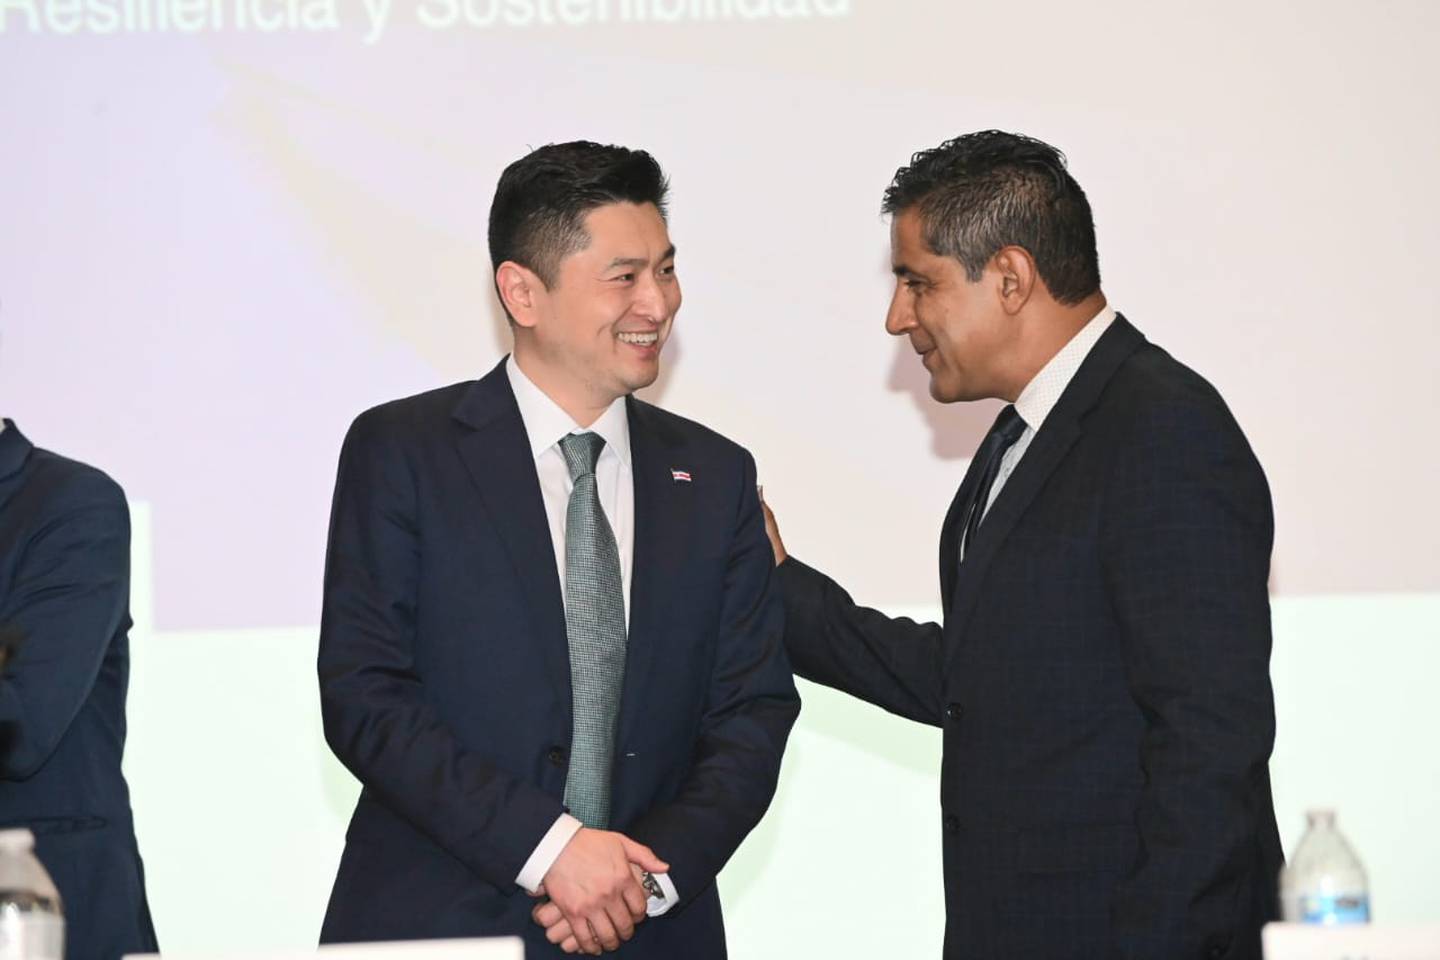 El viernes 12 de abril, el Fondo Monetario Internacional (FMI) finalizó con su última misión presencial en Costa Rica para revisar los avances del país en el marco de los acuerdos suscritos con el organismo. La visita fue liderada por el economista Ding Ding.